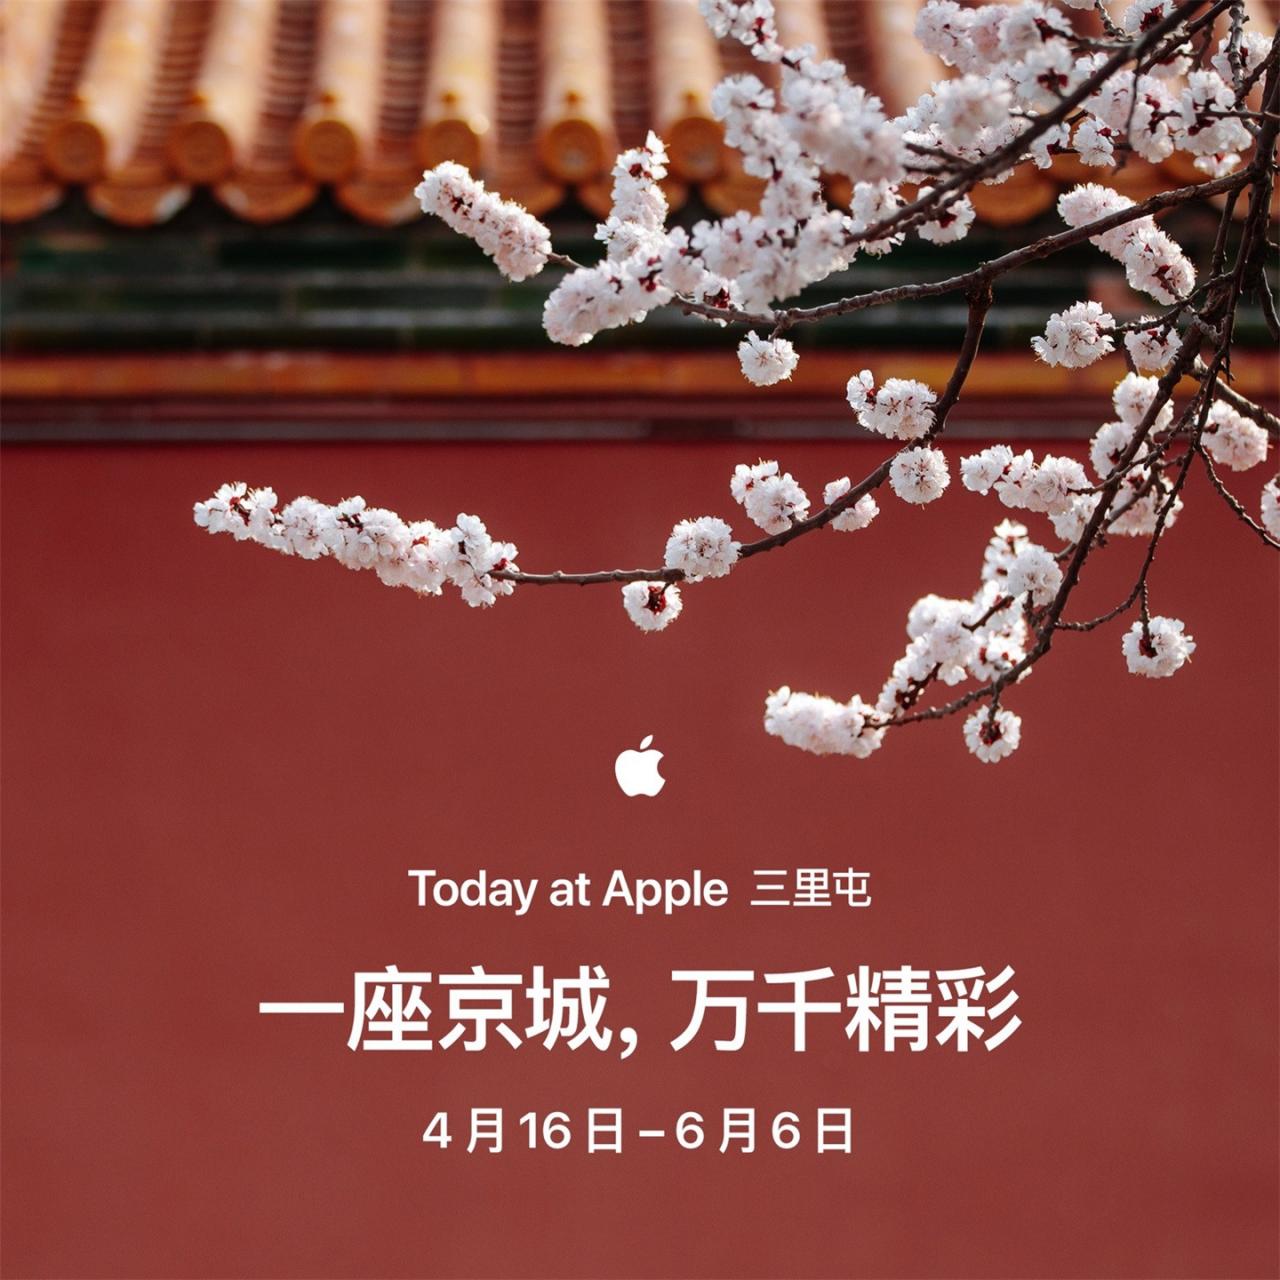 苹果三里屯零售店推出 “一座京城 万千精彩”系列课程